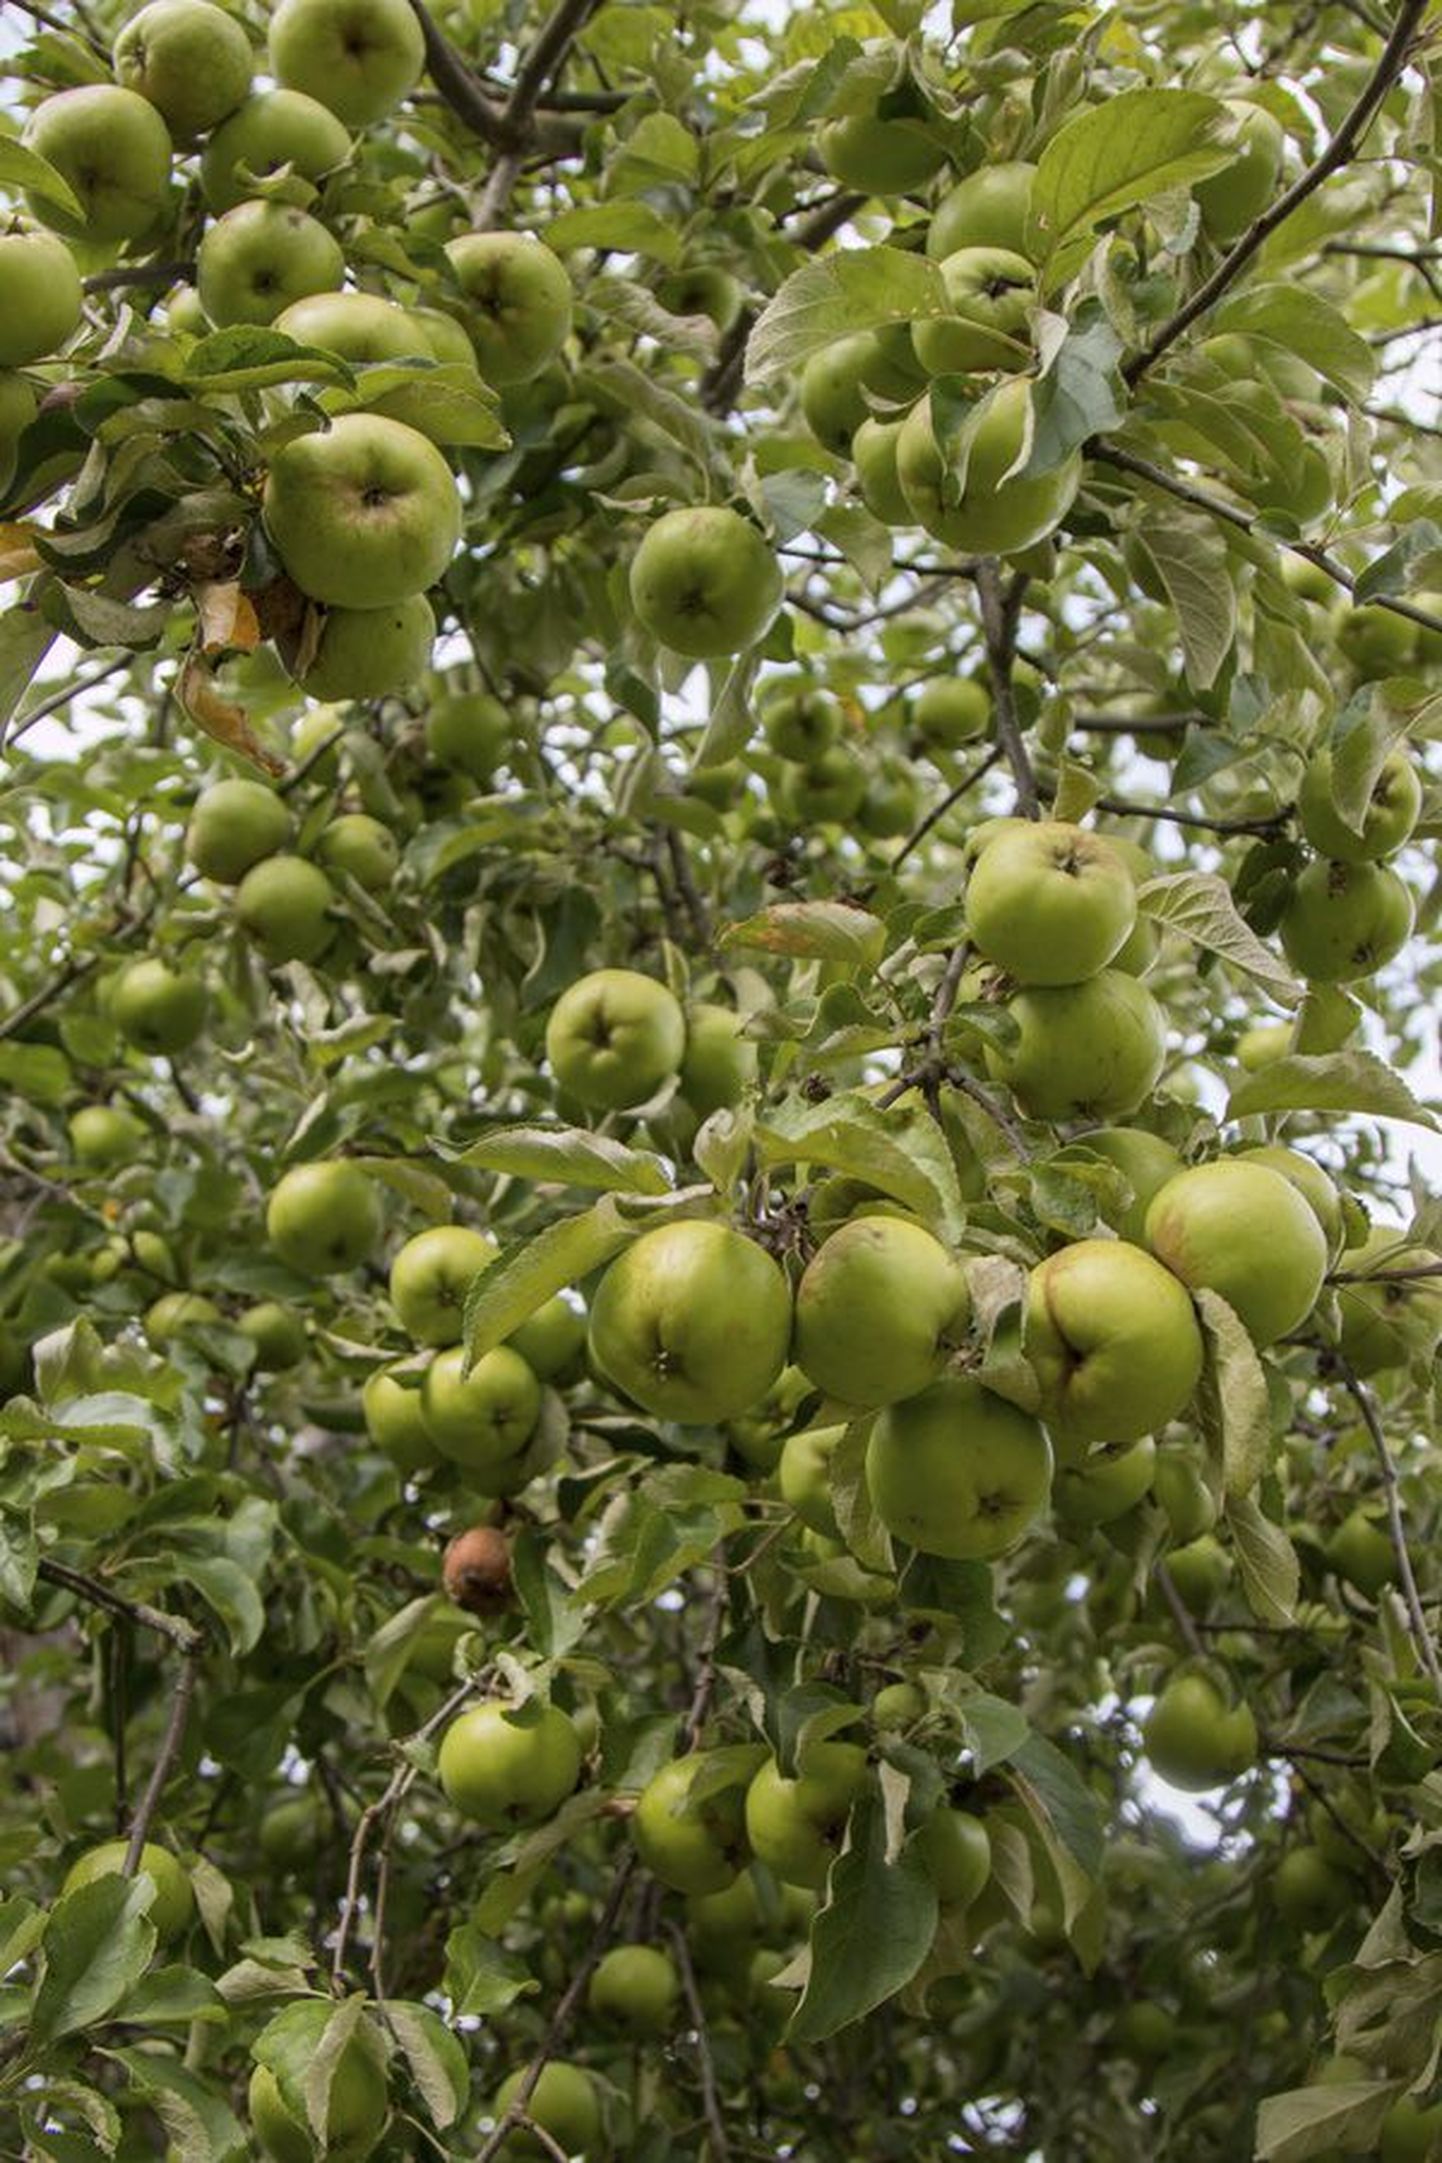 Peetrimõisa õunu täis aiad ootavad rallitajaid 13. septembril.